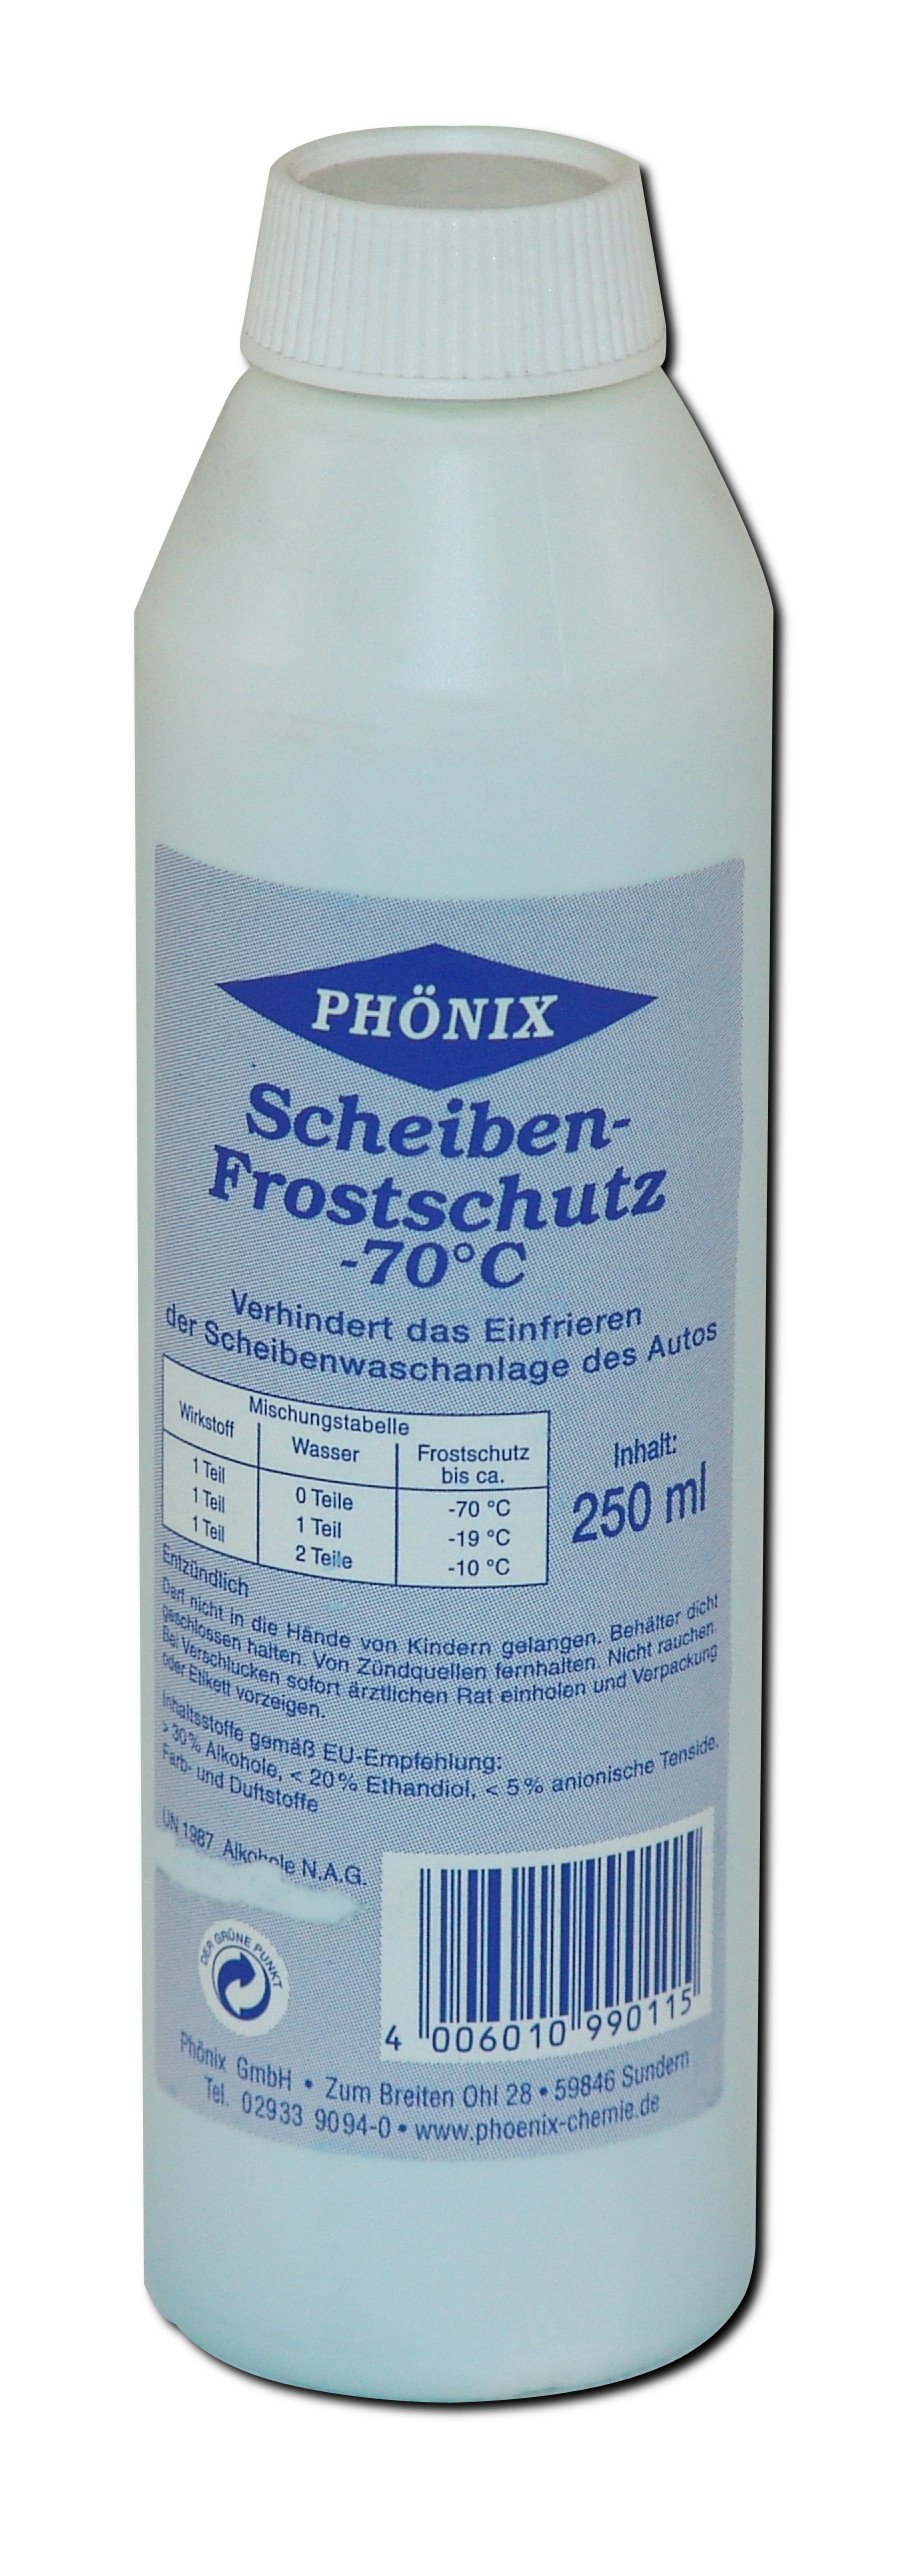 PHÖNIX Scheiben-Frostschutz -70°C Auto KFZ Scheibenwaschanlagen Frost Schutz 250 ml (Grundpreis: 21,96 € / Liter) von Phönix